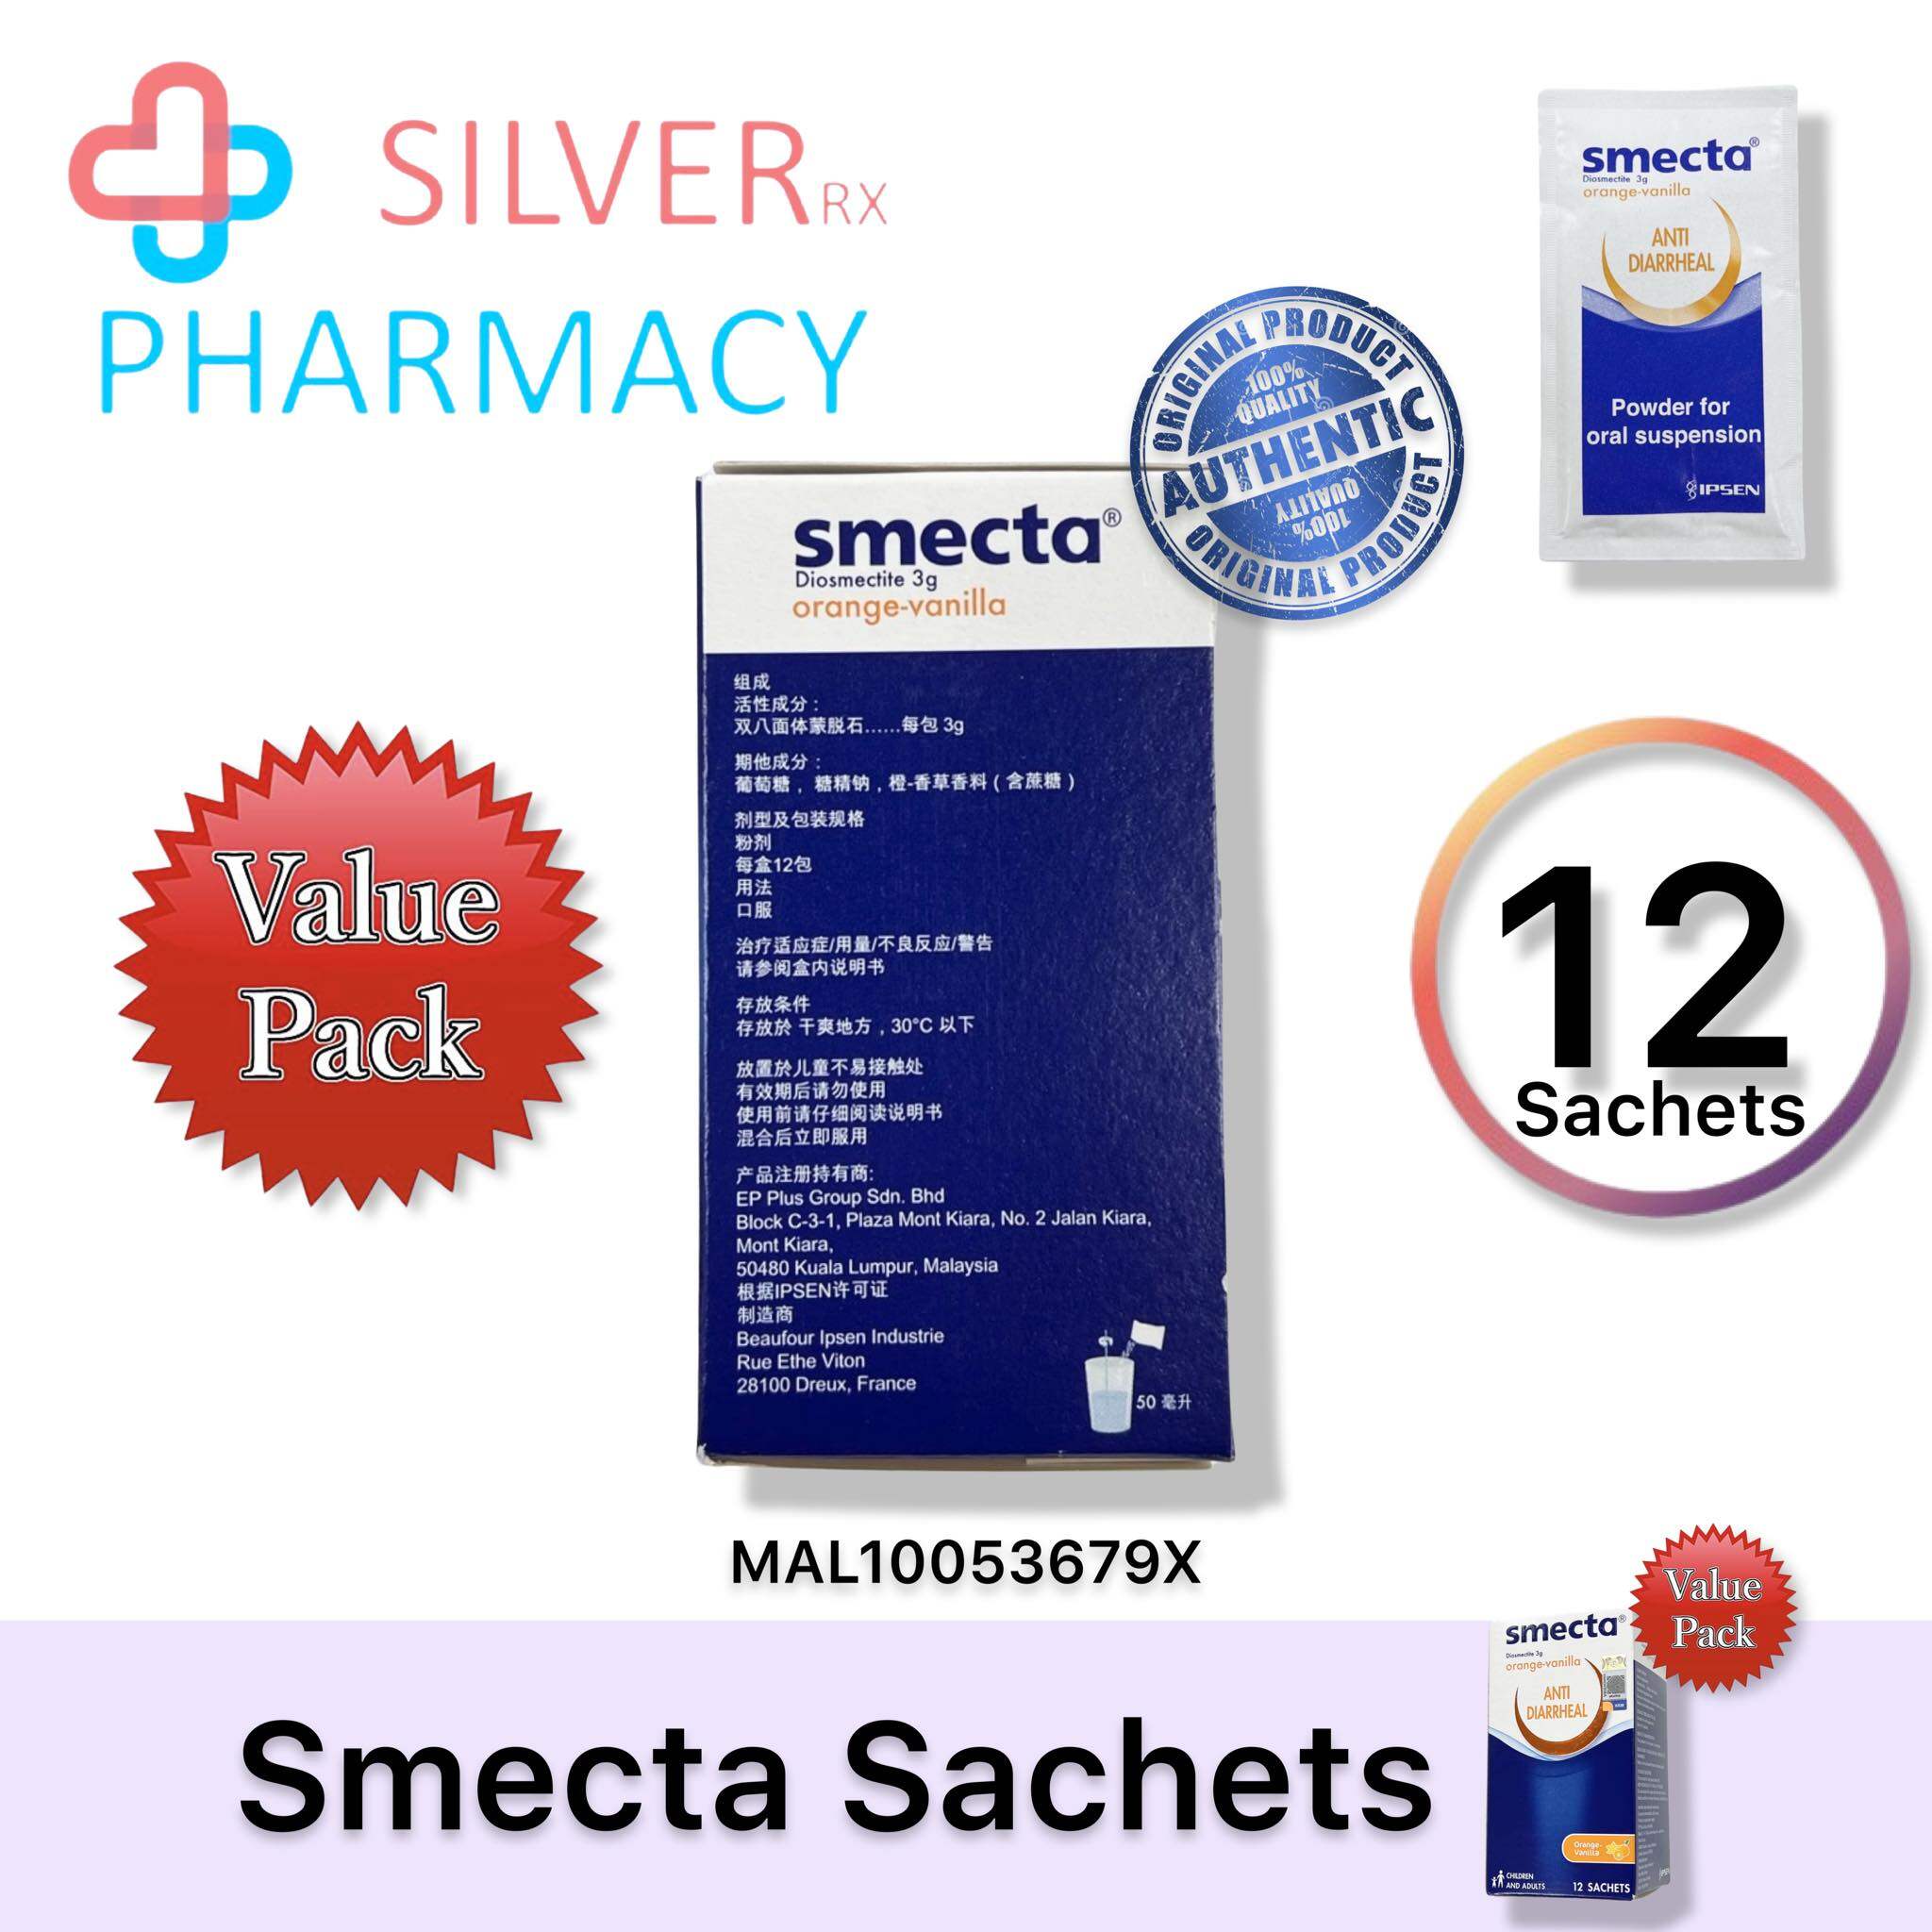 [Exp 09/2025] Smecta Anti-Diarrheal Powder Diosmectite Orange-Vanilla 3g sachet [1's/ 12's]